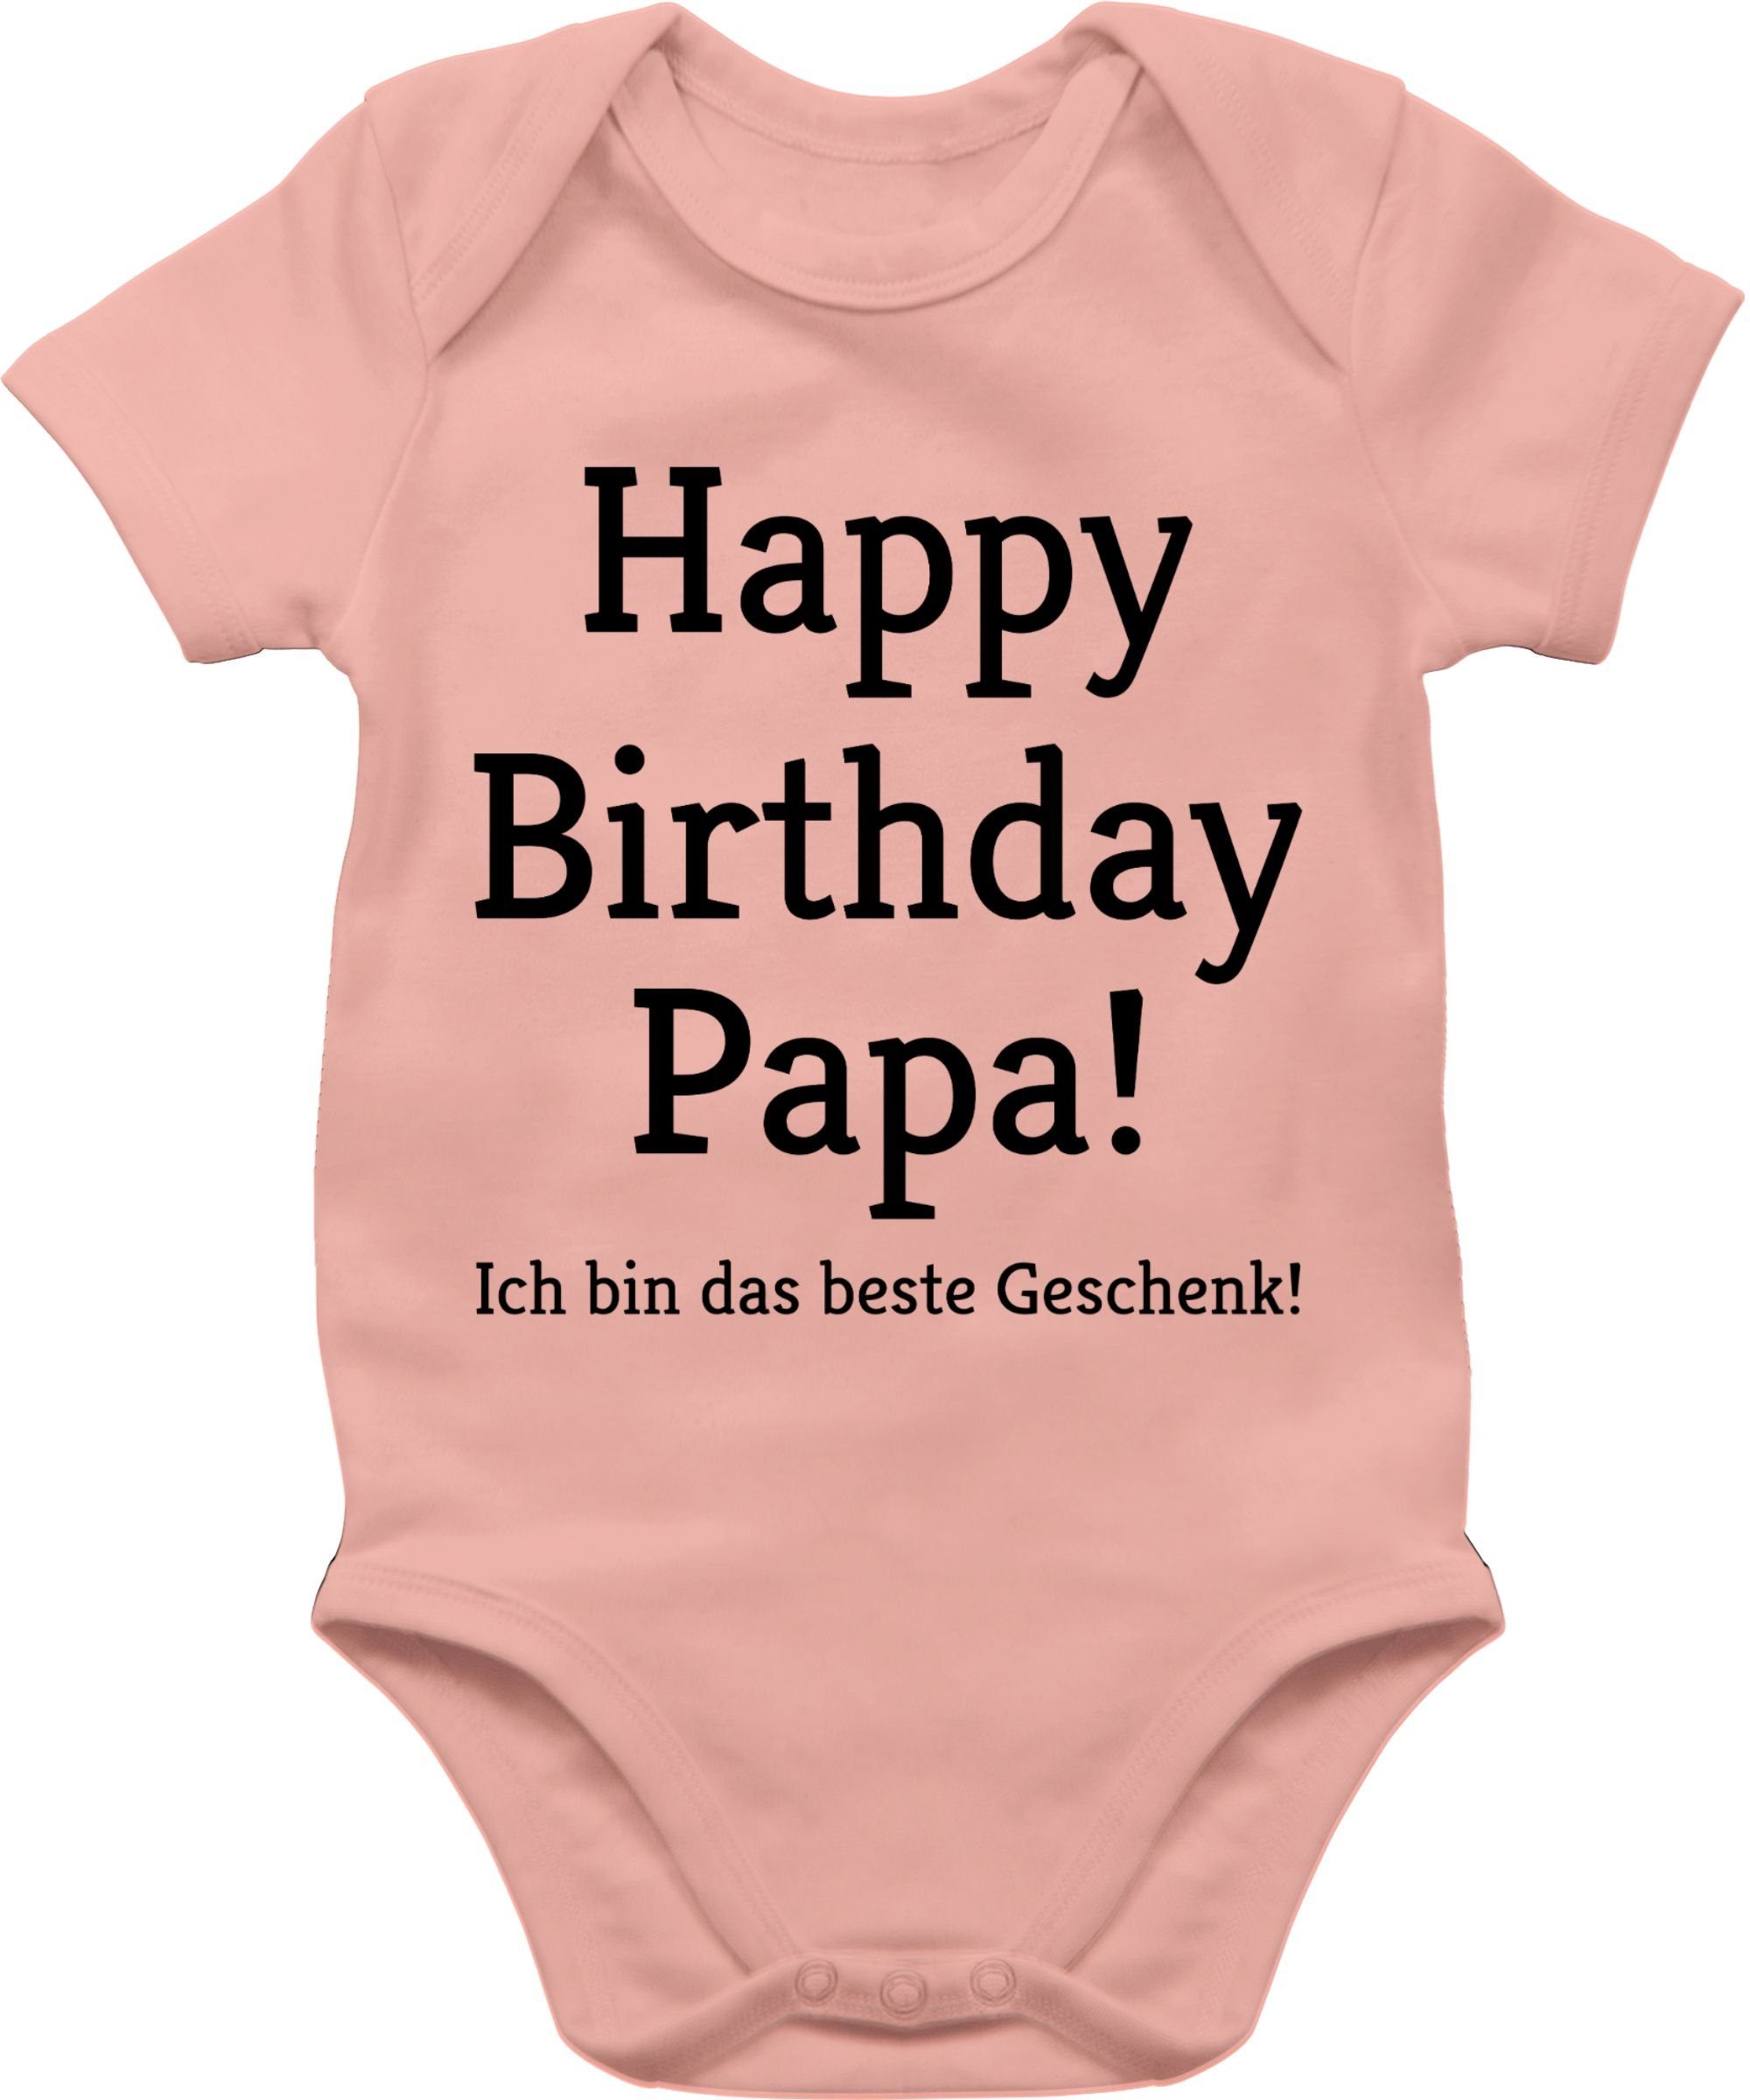 Babyrosa Event Happy Baby Geschenke Ich Geschenk! Shirtbody Papa! 1 Birthday Shirtracer das bin